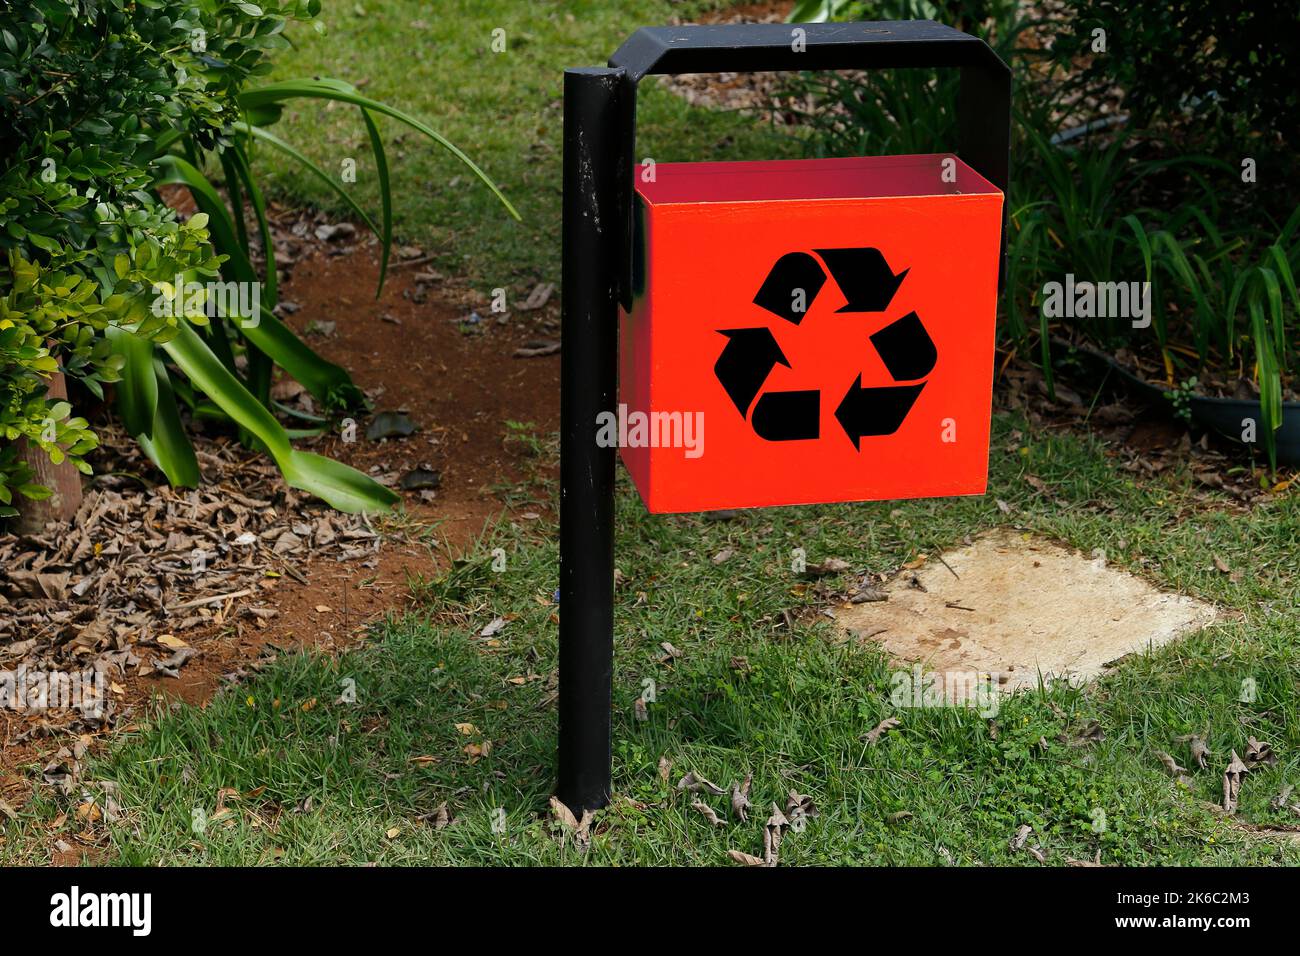 Roter Metallabfallbehälter mit Recycling-Symbol im grünen öffentlichen Bereich und Garten - Müllabfuhr Stockfoto